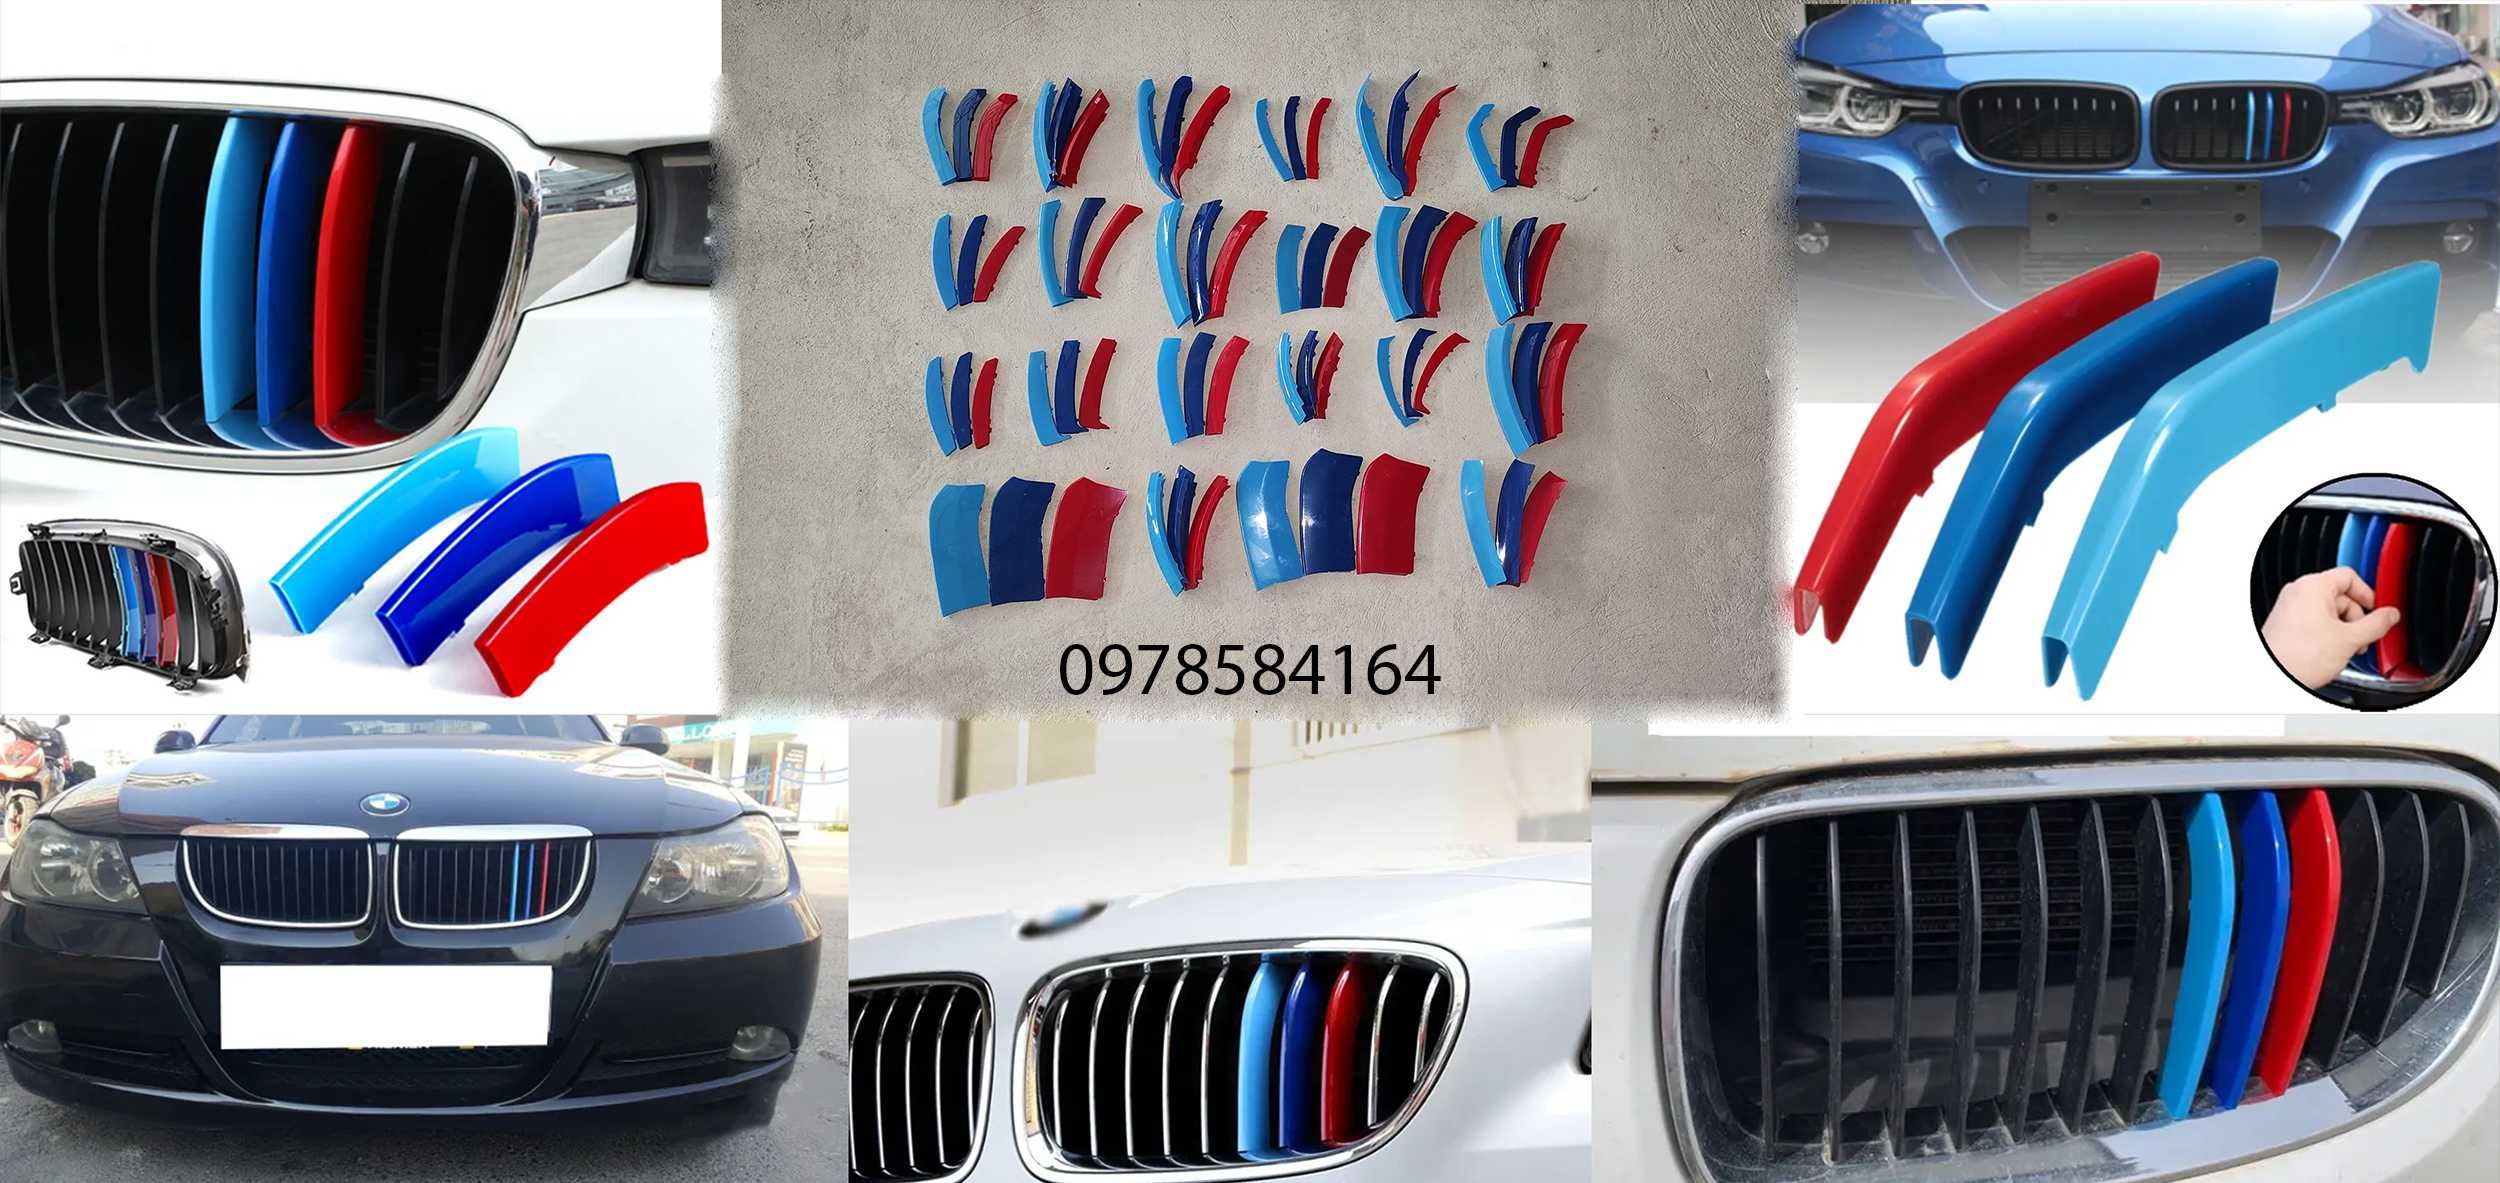 накладки на ноздри решетку BMW bmw бмв e46e90e92f30e39e60f10e70f15f16